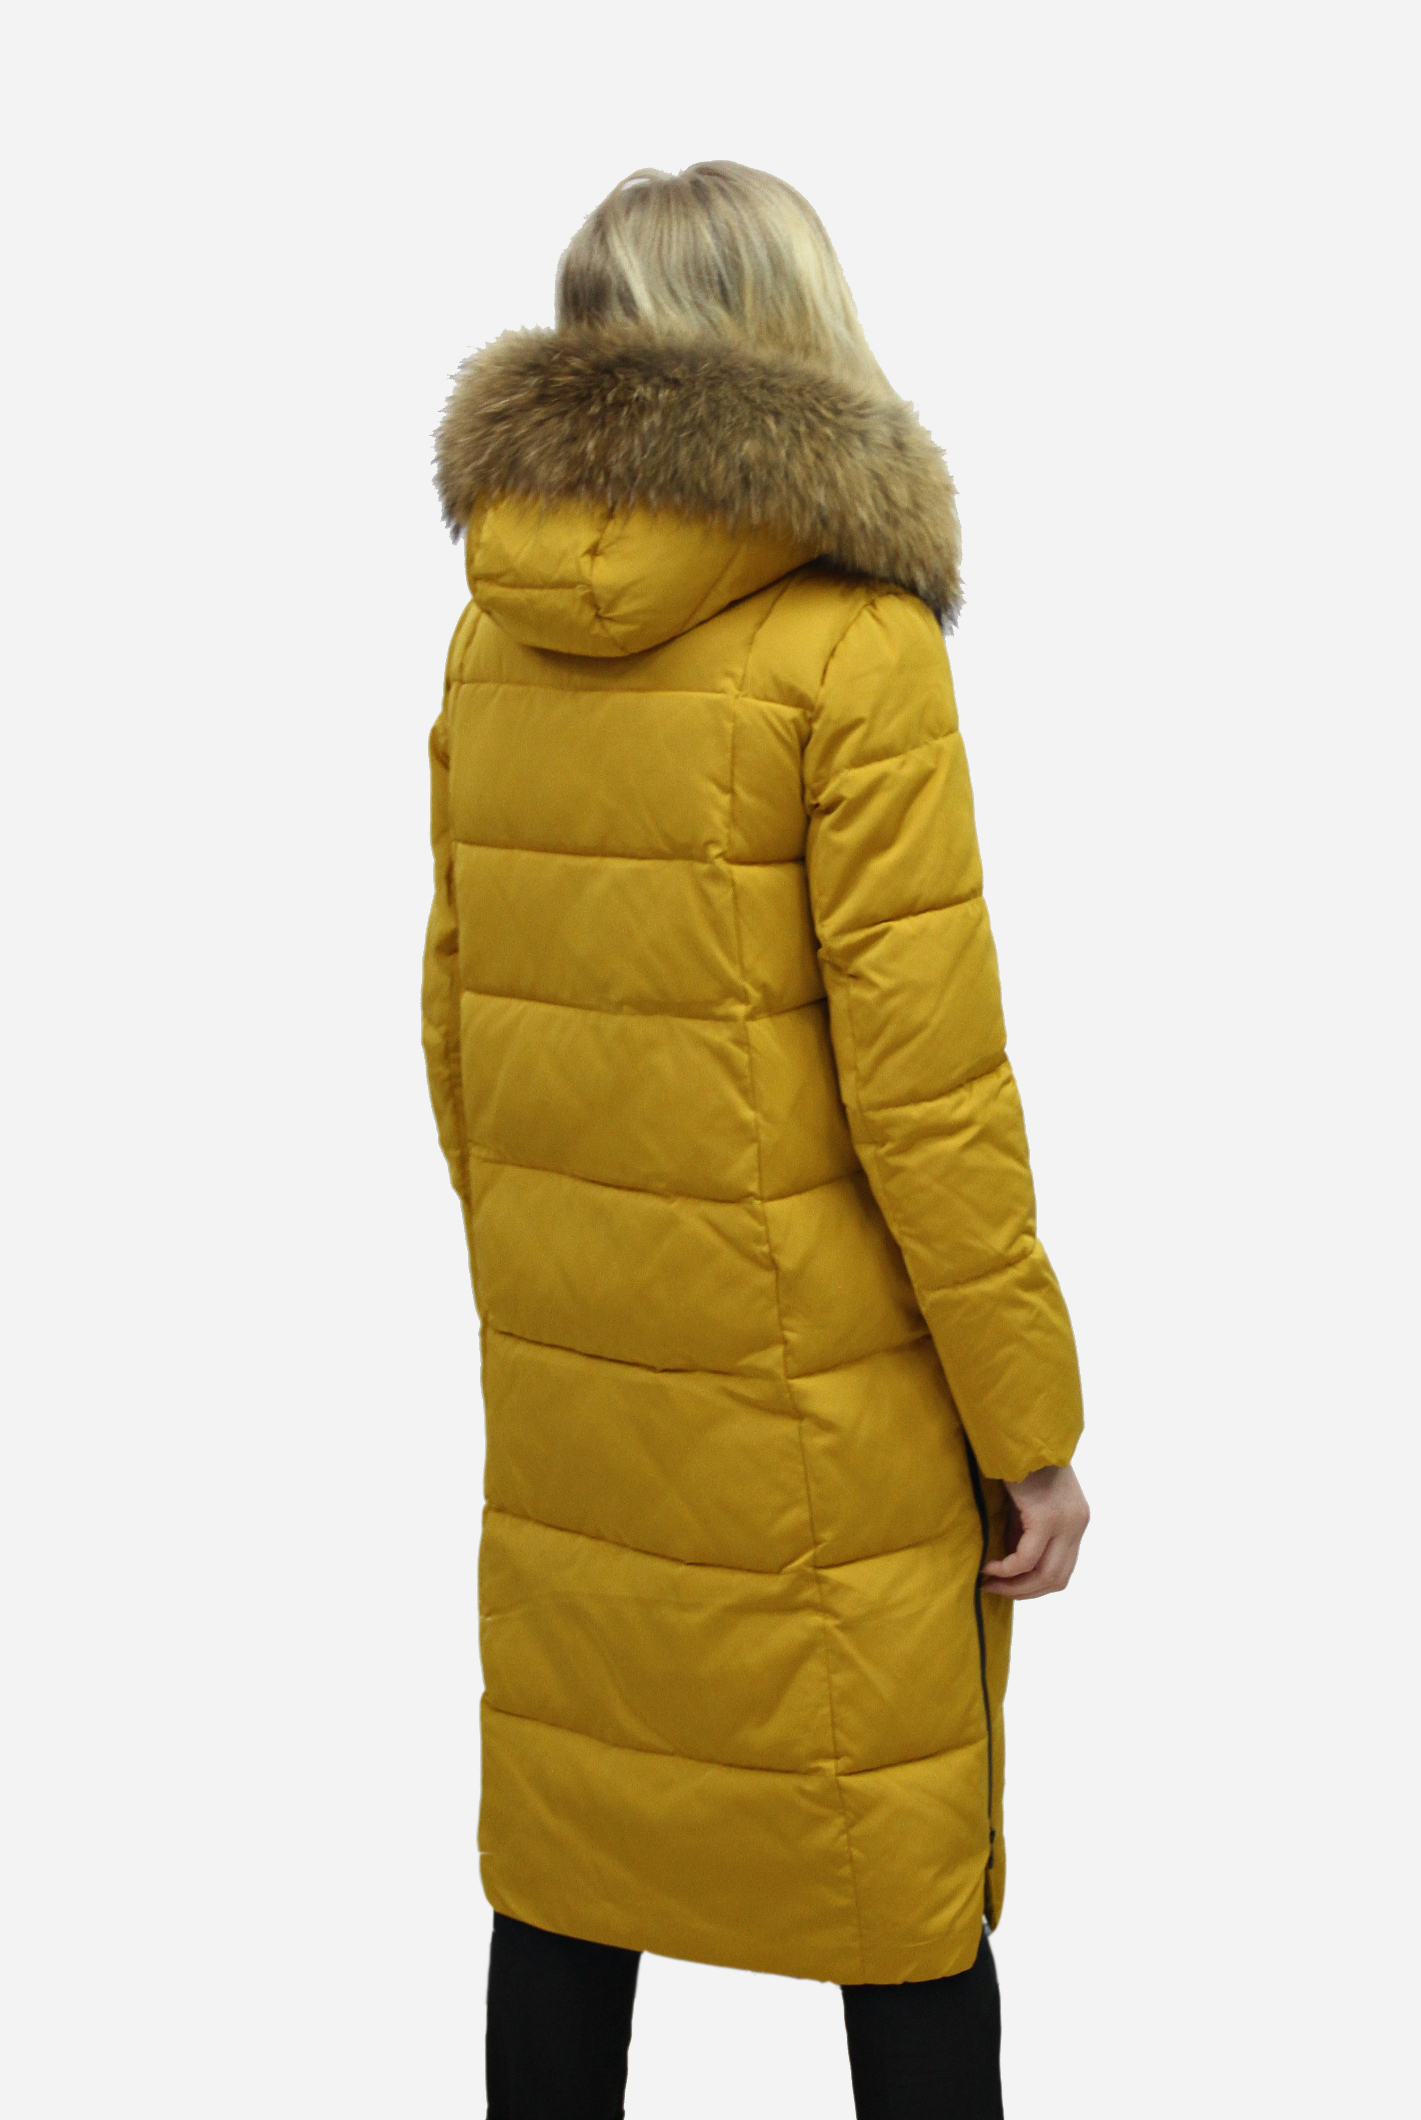 Куртка женская зимняя (SAN CRONY)